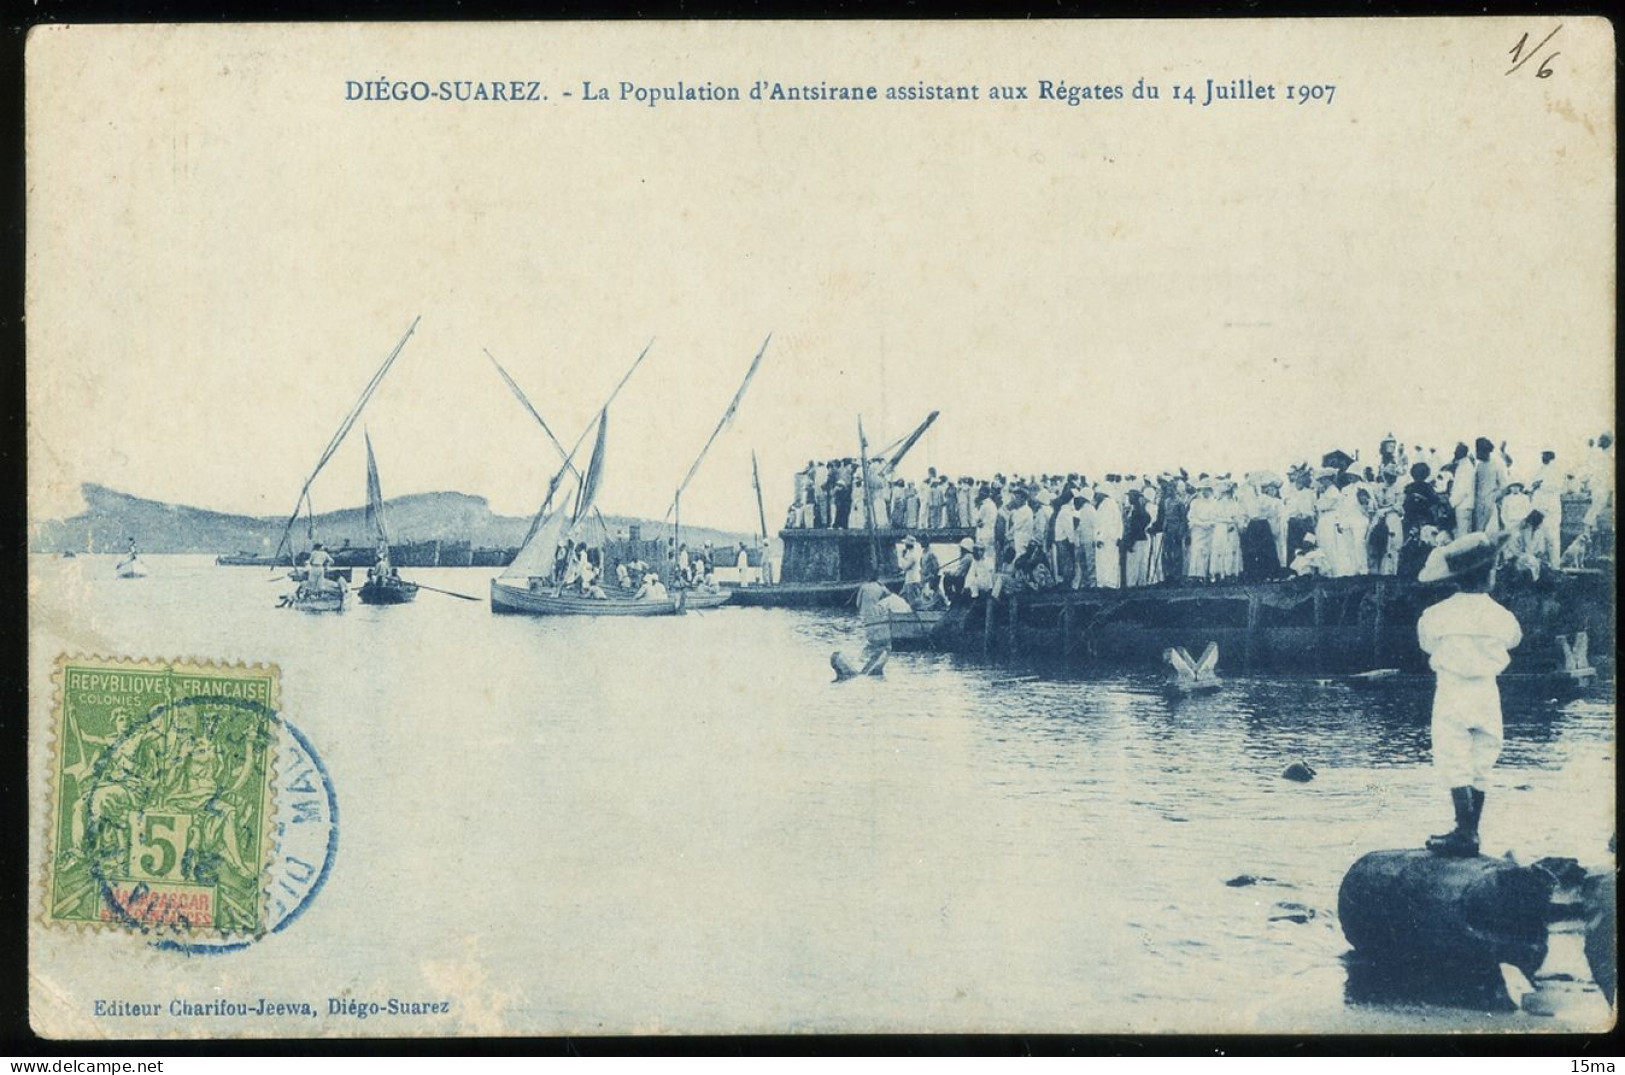 Diego Suarez Régates Du 14 Juillet 1907 Courses Des Bertons De La Flottille Passage Du Radeau - Madagaskar